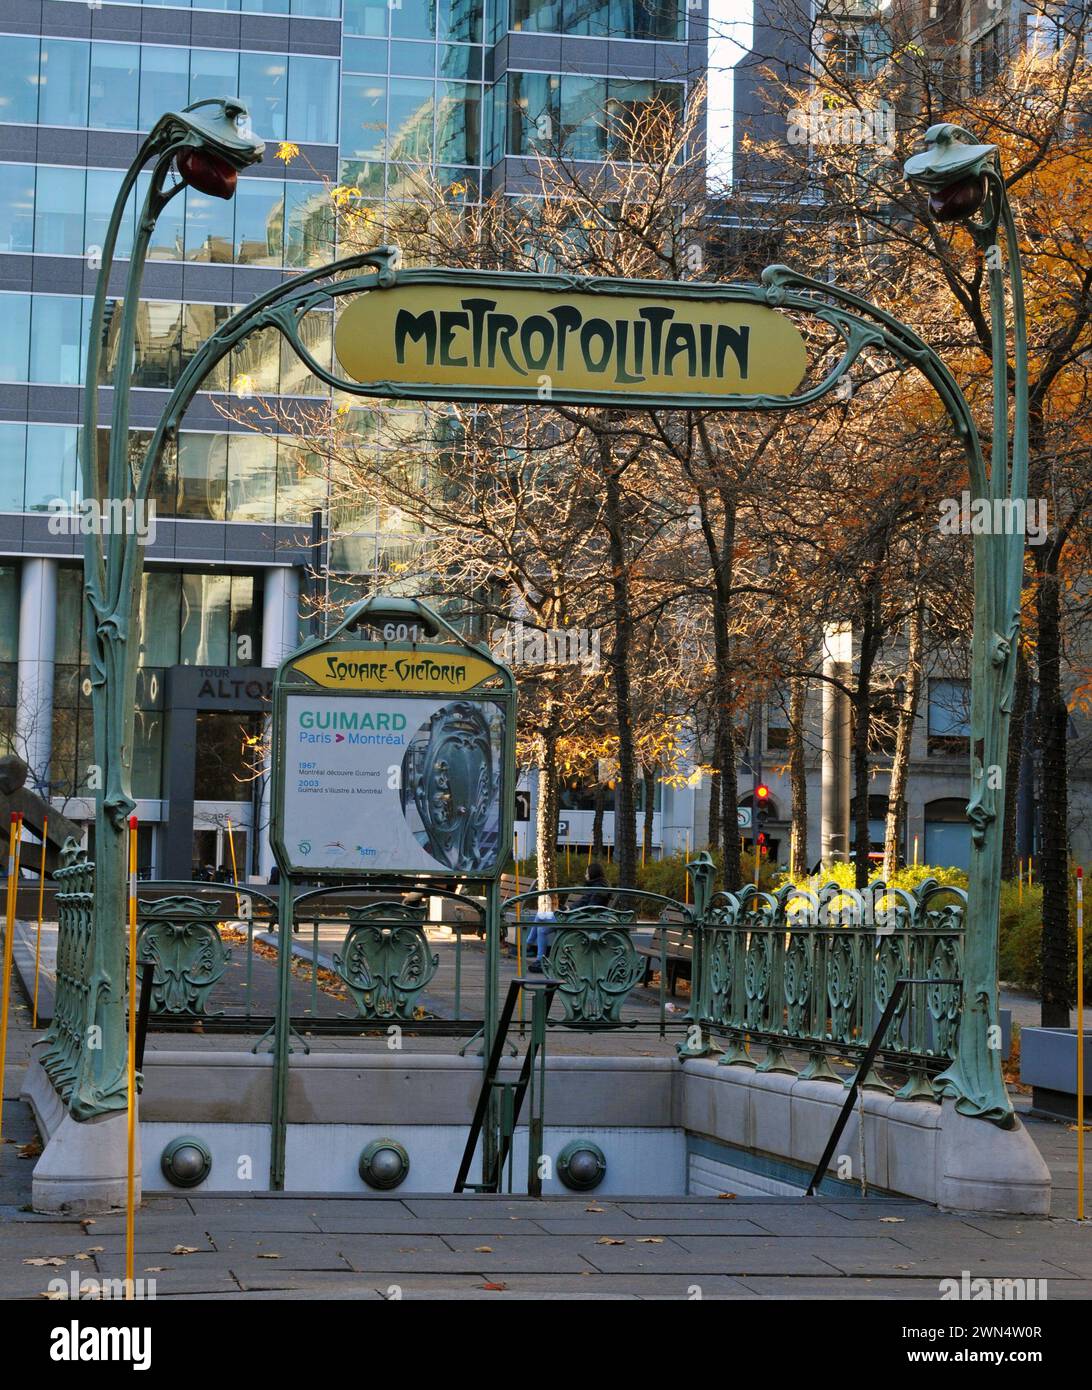 Une entrée de métro Art nouveau originaire du métro de Paris orne l'entrée Saint-Antoine à la station Victoria Square du métro de Montréal. Banque D'Images